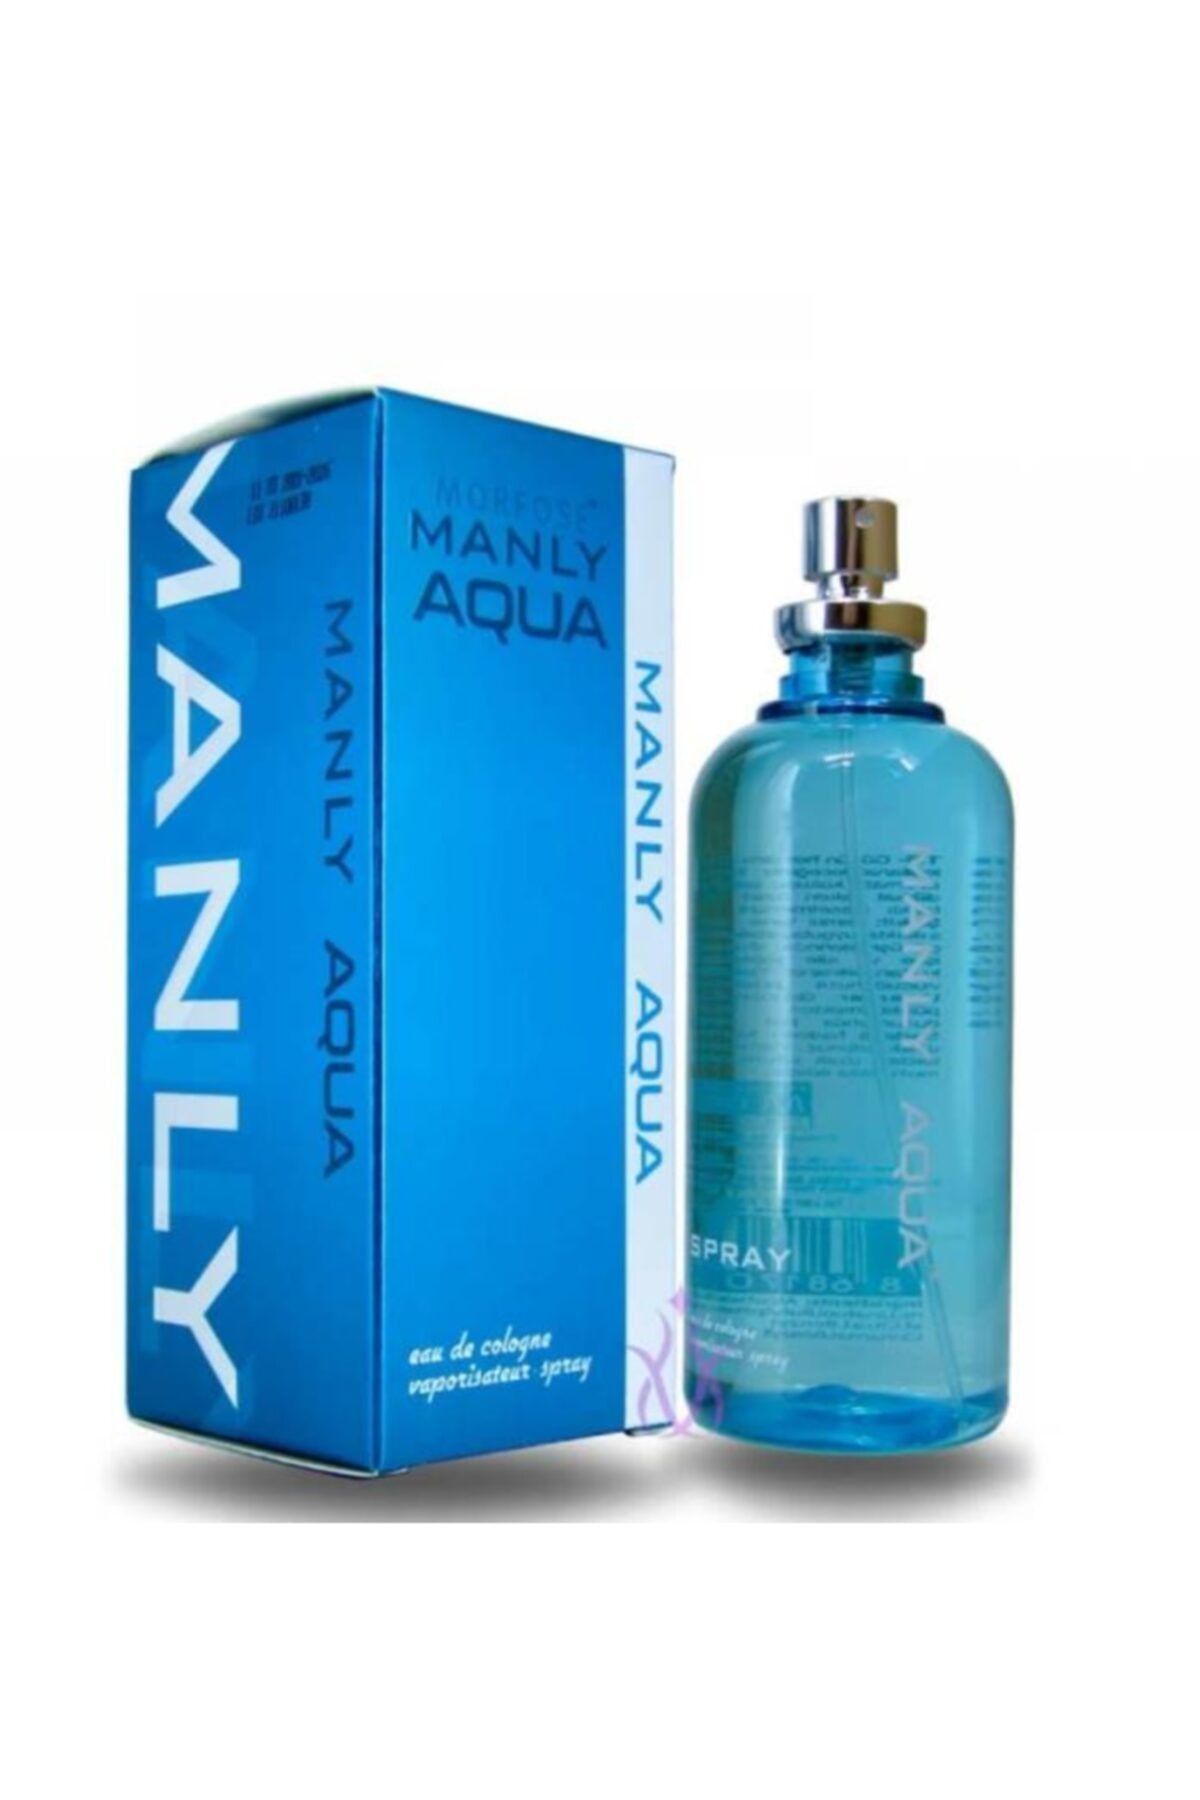 Manly Aqua Edc 125 ml Erkek Parfüm 868170100693961